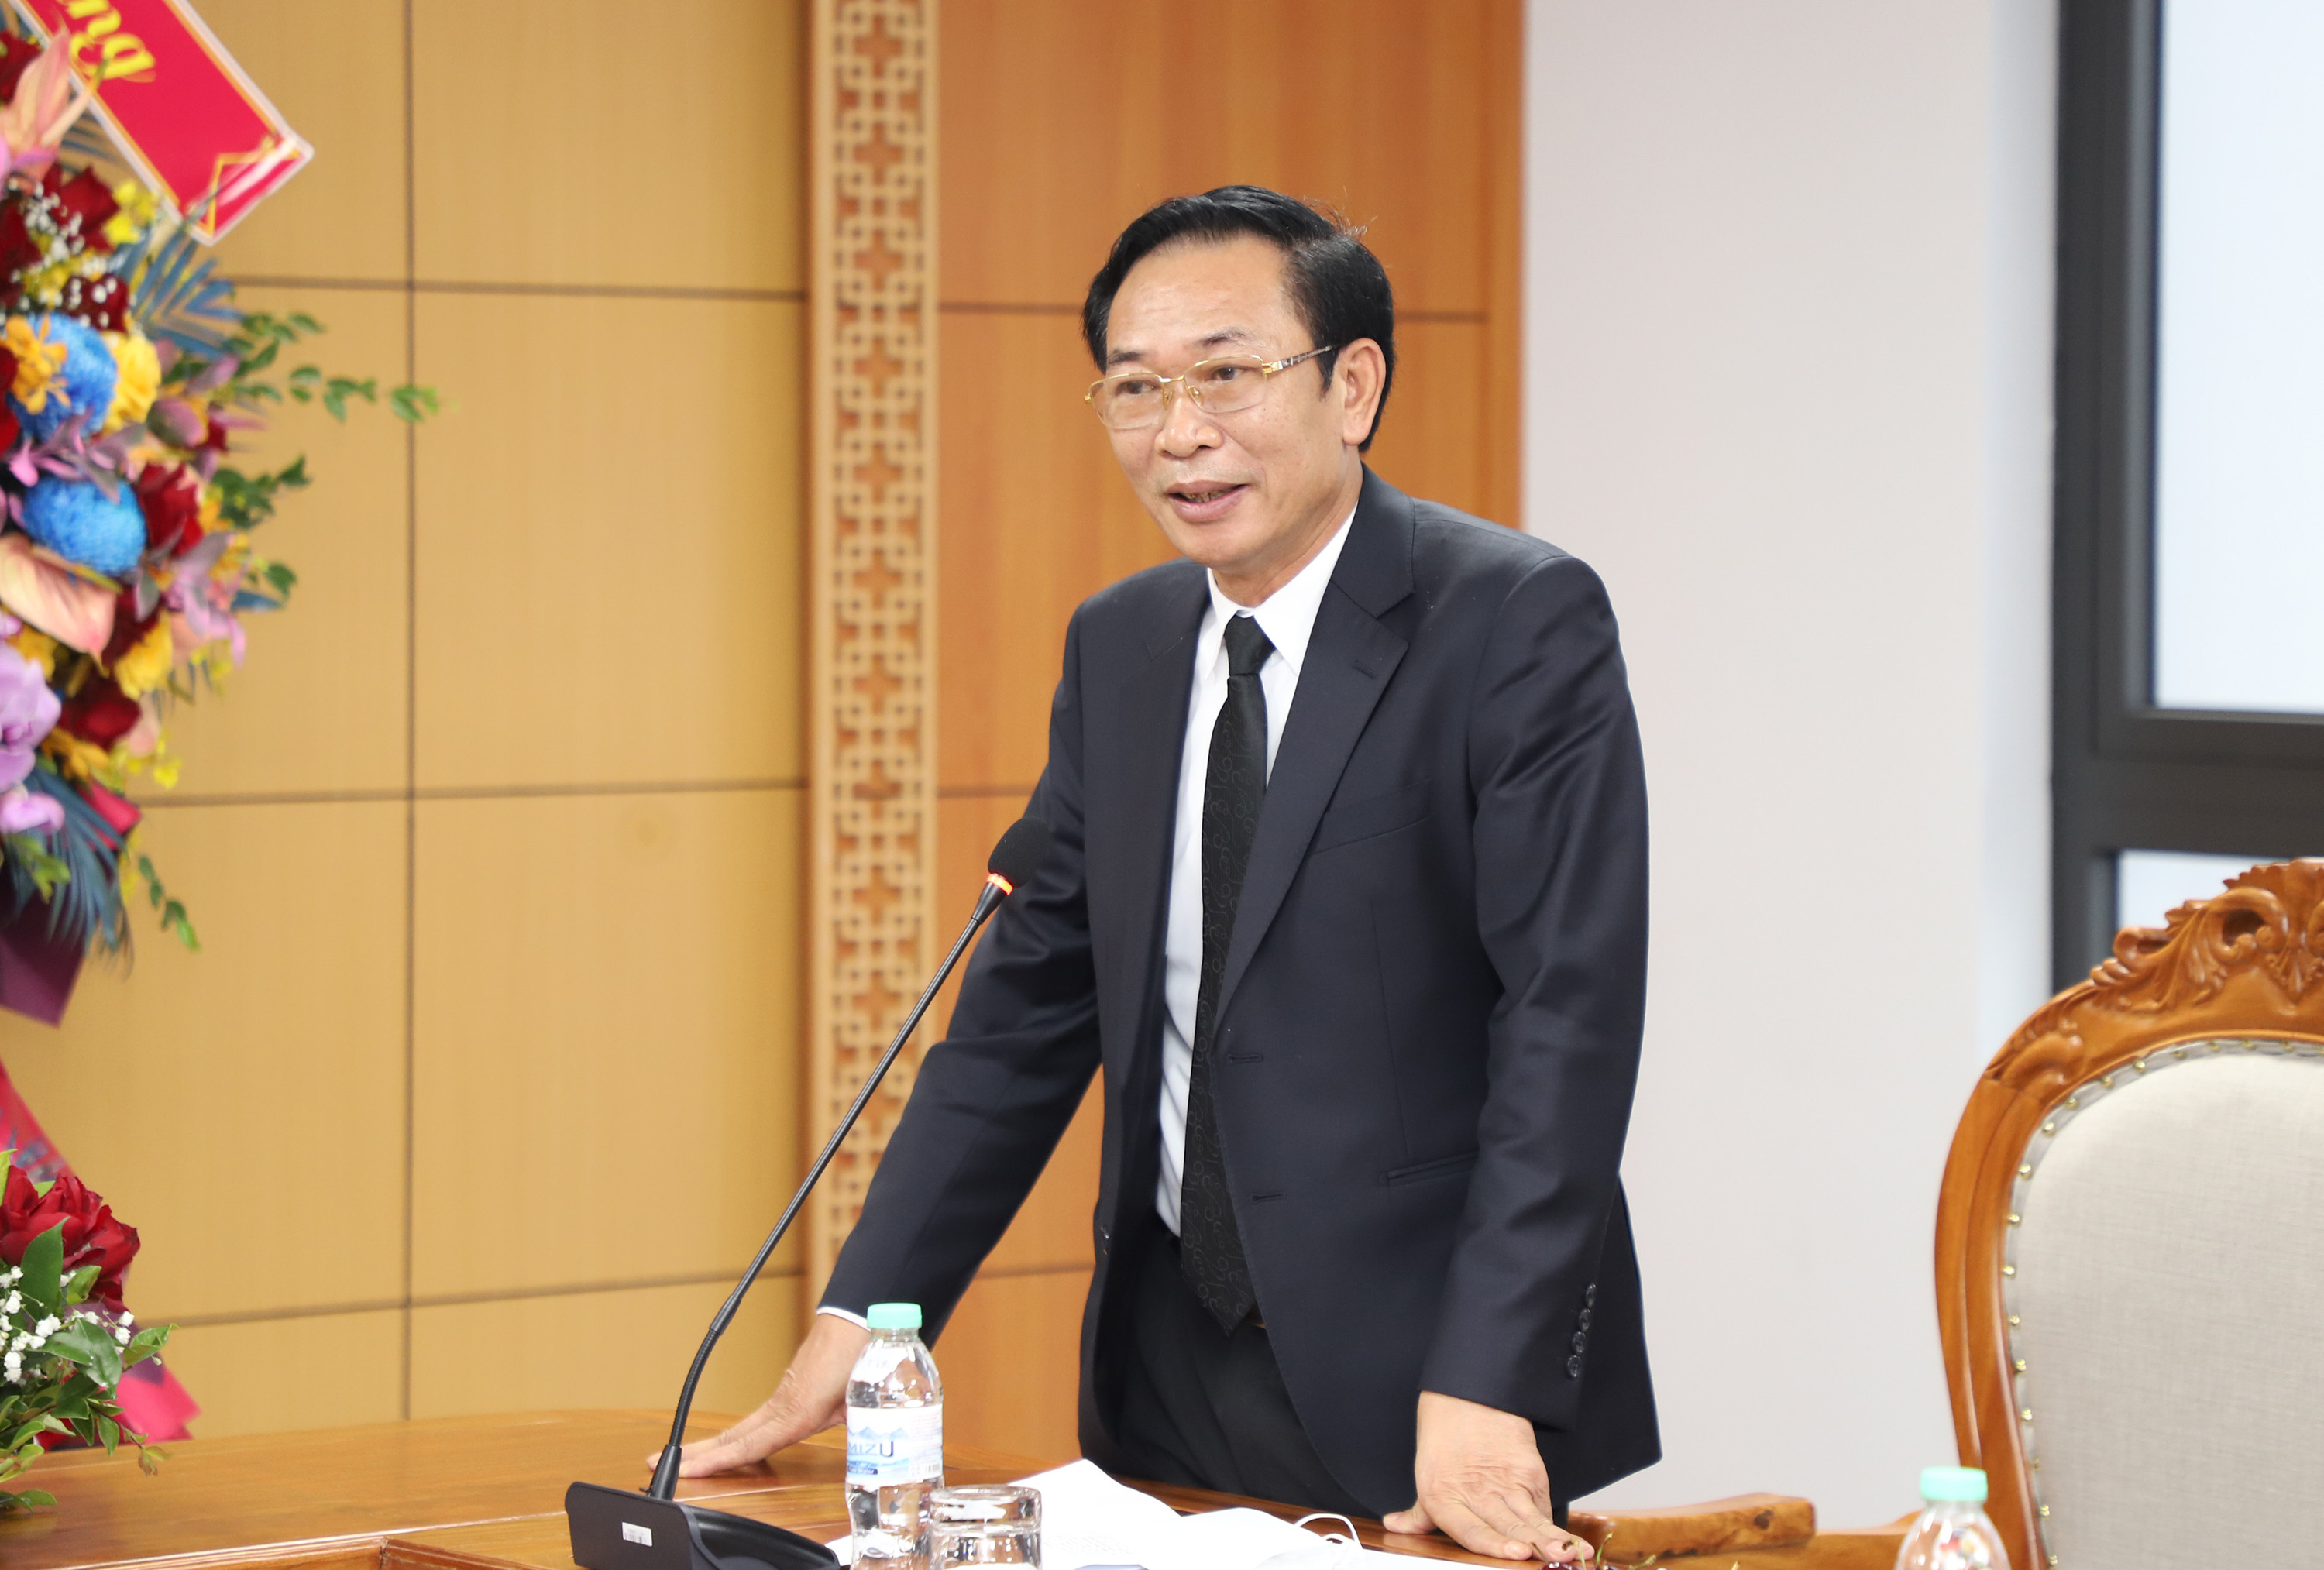 Đồng chí Nguyễn Xuân Hải - Giám đốc Sở Tài chính báo cáo với Đoàn công tác về kết quả hoạt động của Sở trong năm 2021. Ảnh: Phạm Bằng